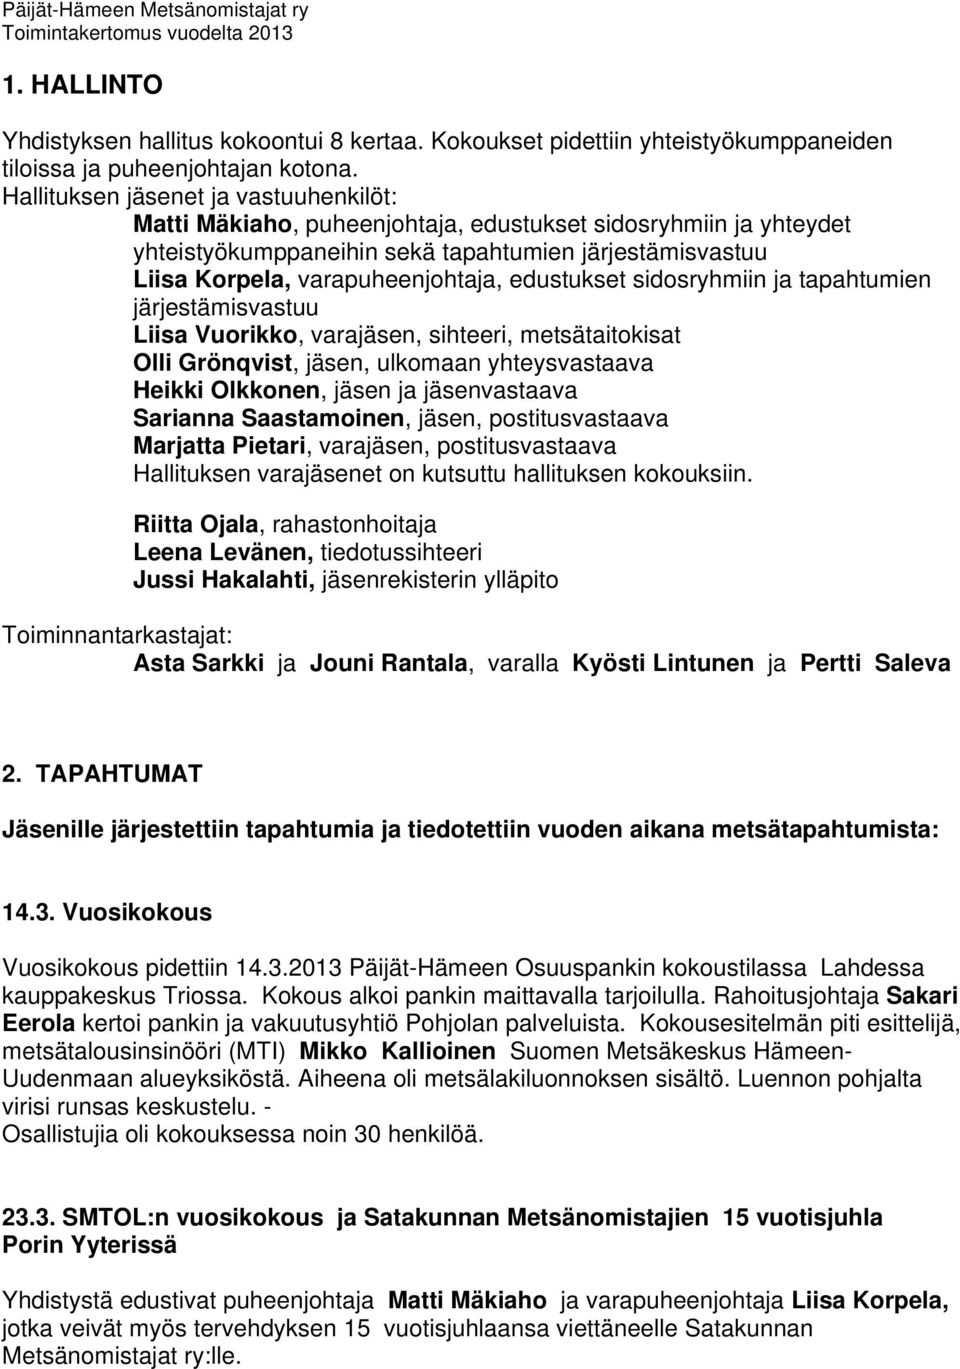 edustukset sidosryhmiin ja tapahtumien järjestämisvastuu Liisa Vuorikko, varajäsen, sihteeri, metsätaitokisat Olli Grönqvist, jäsen, ulkomaan yhteysvastaava Heikki Olkkonen, jäsen ja jäsenvastaava